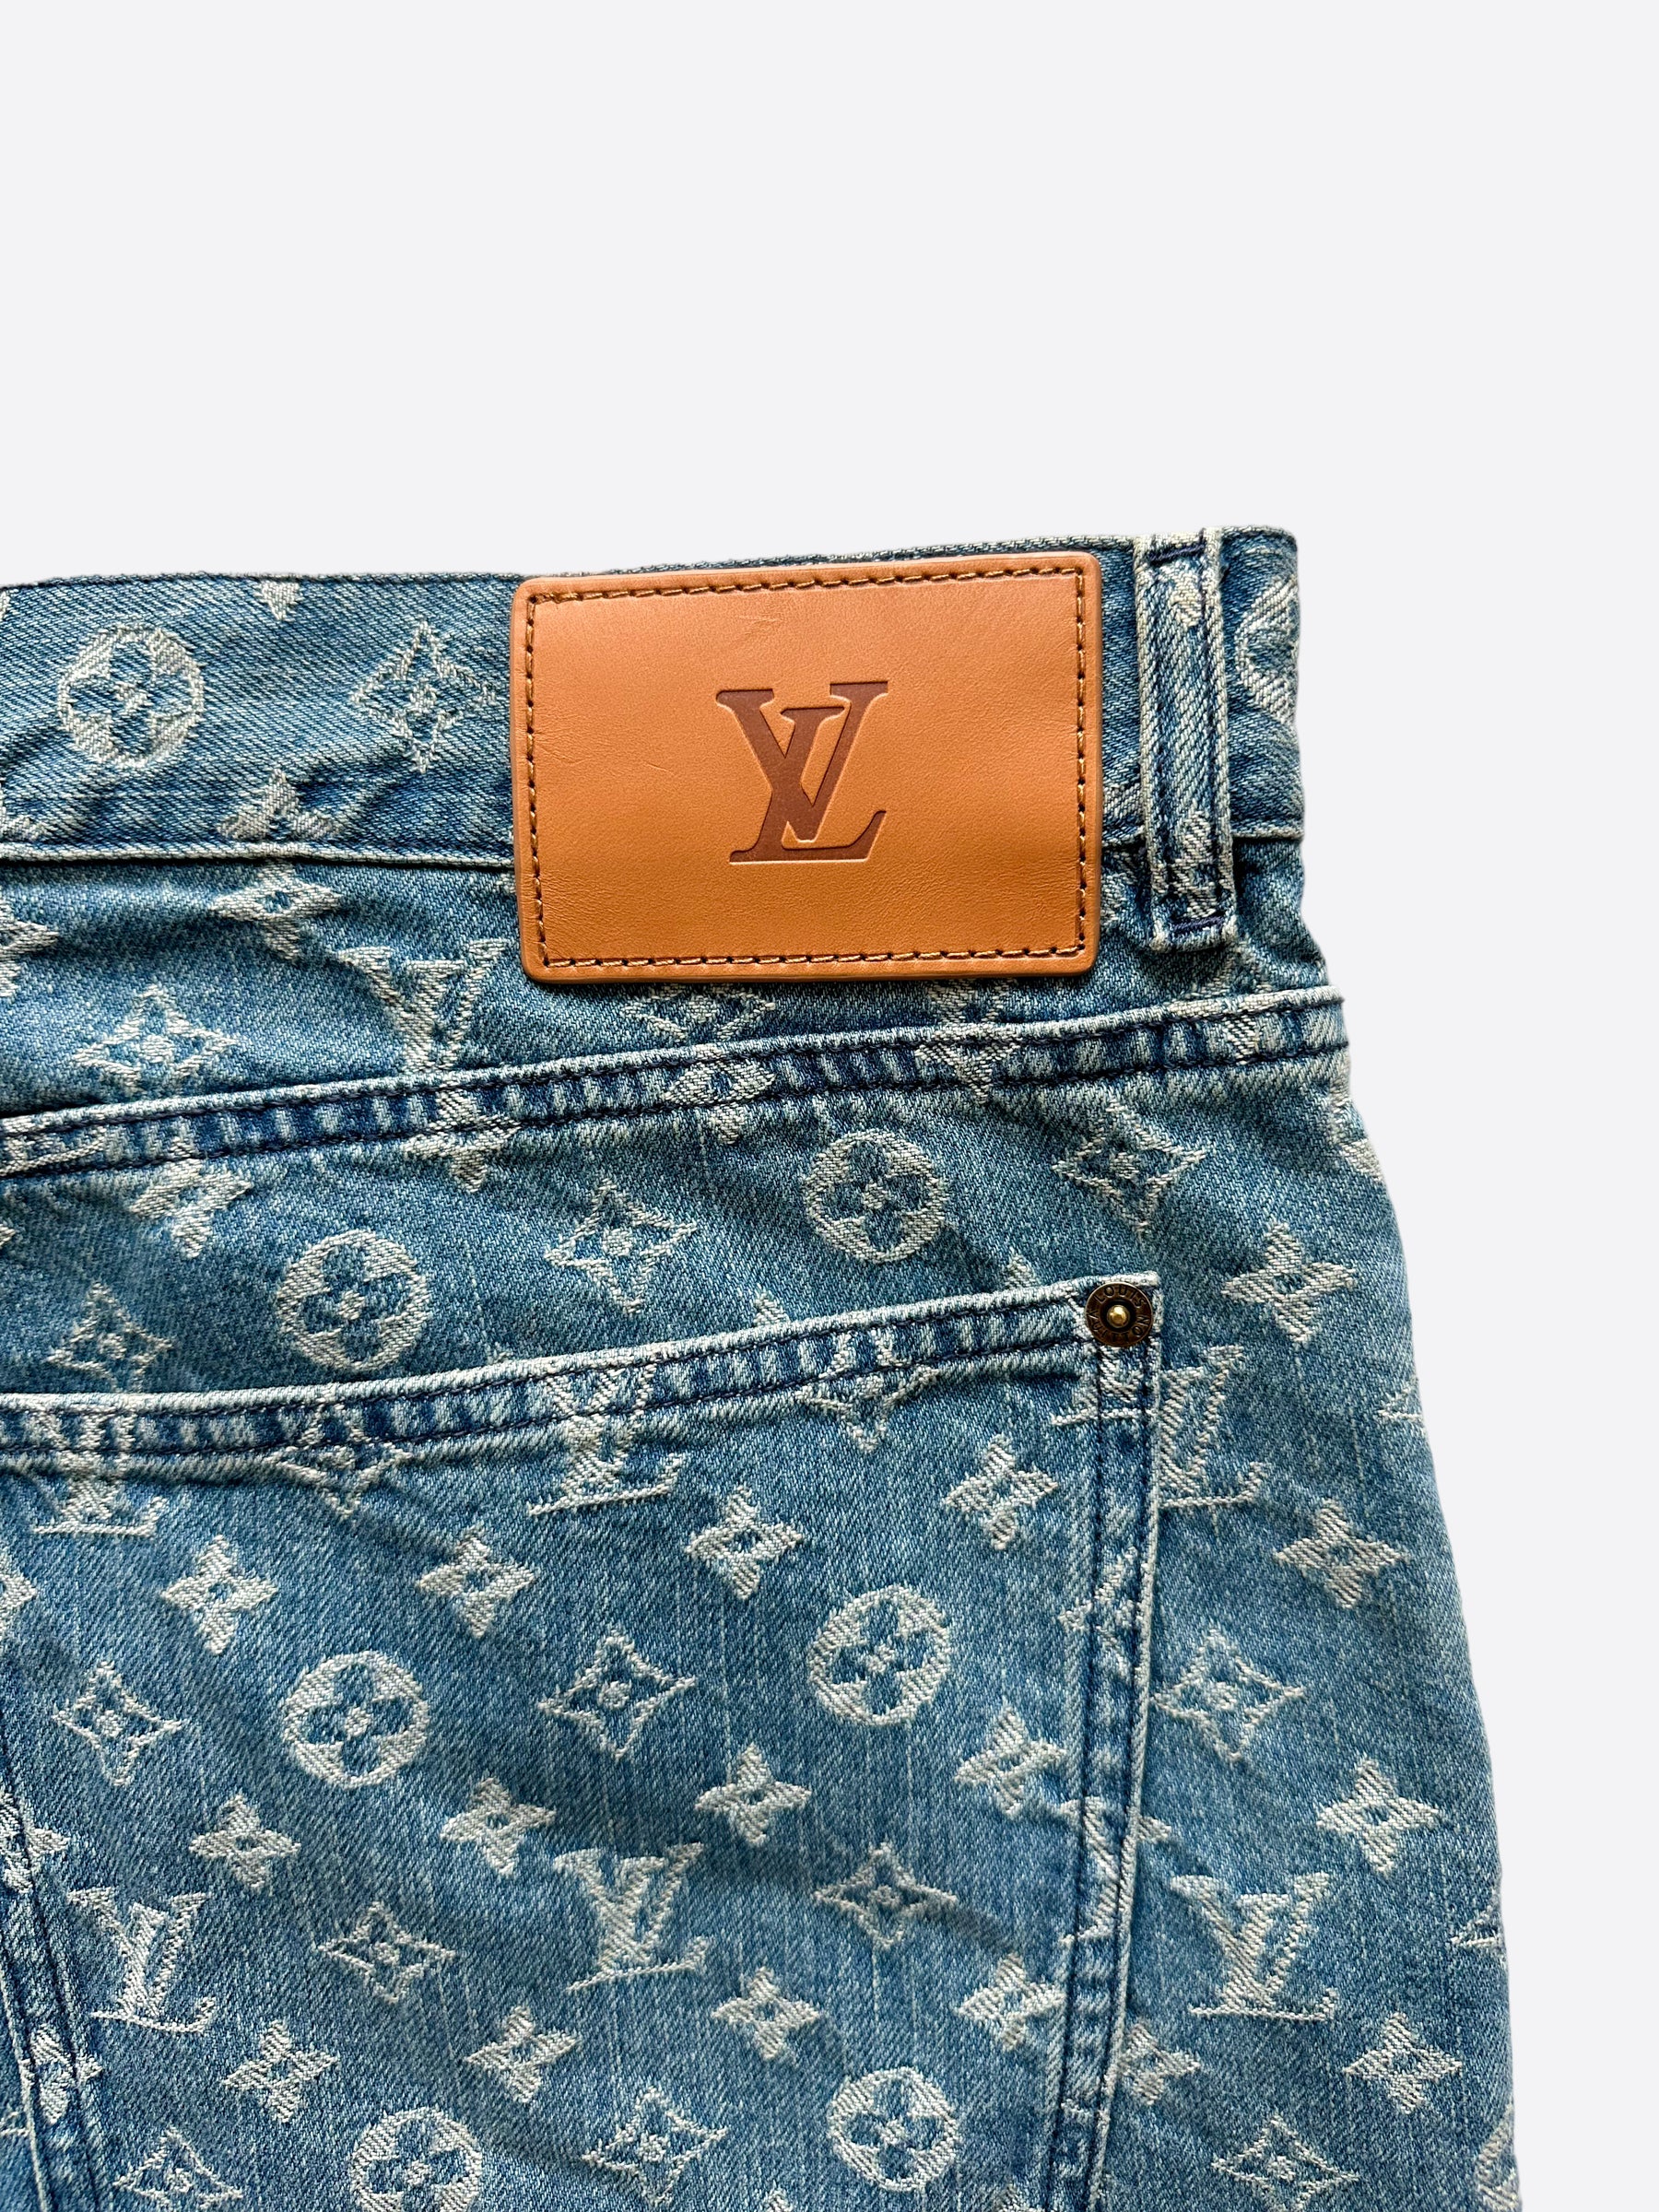 Louis Vuitton Monogram Jeans